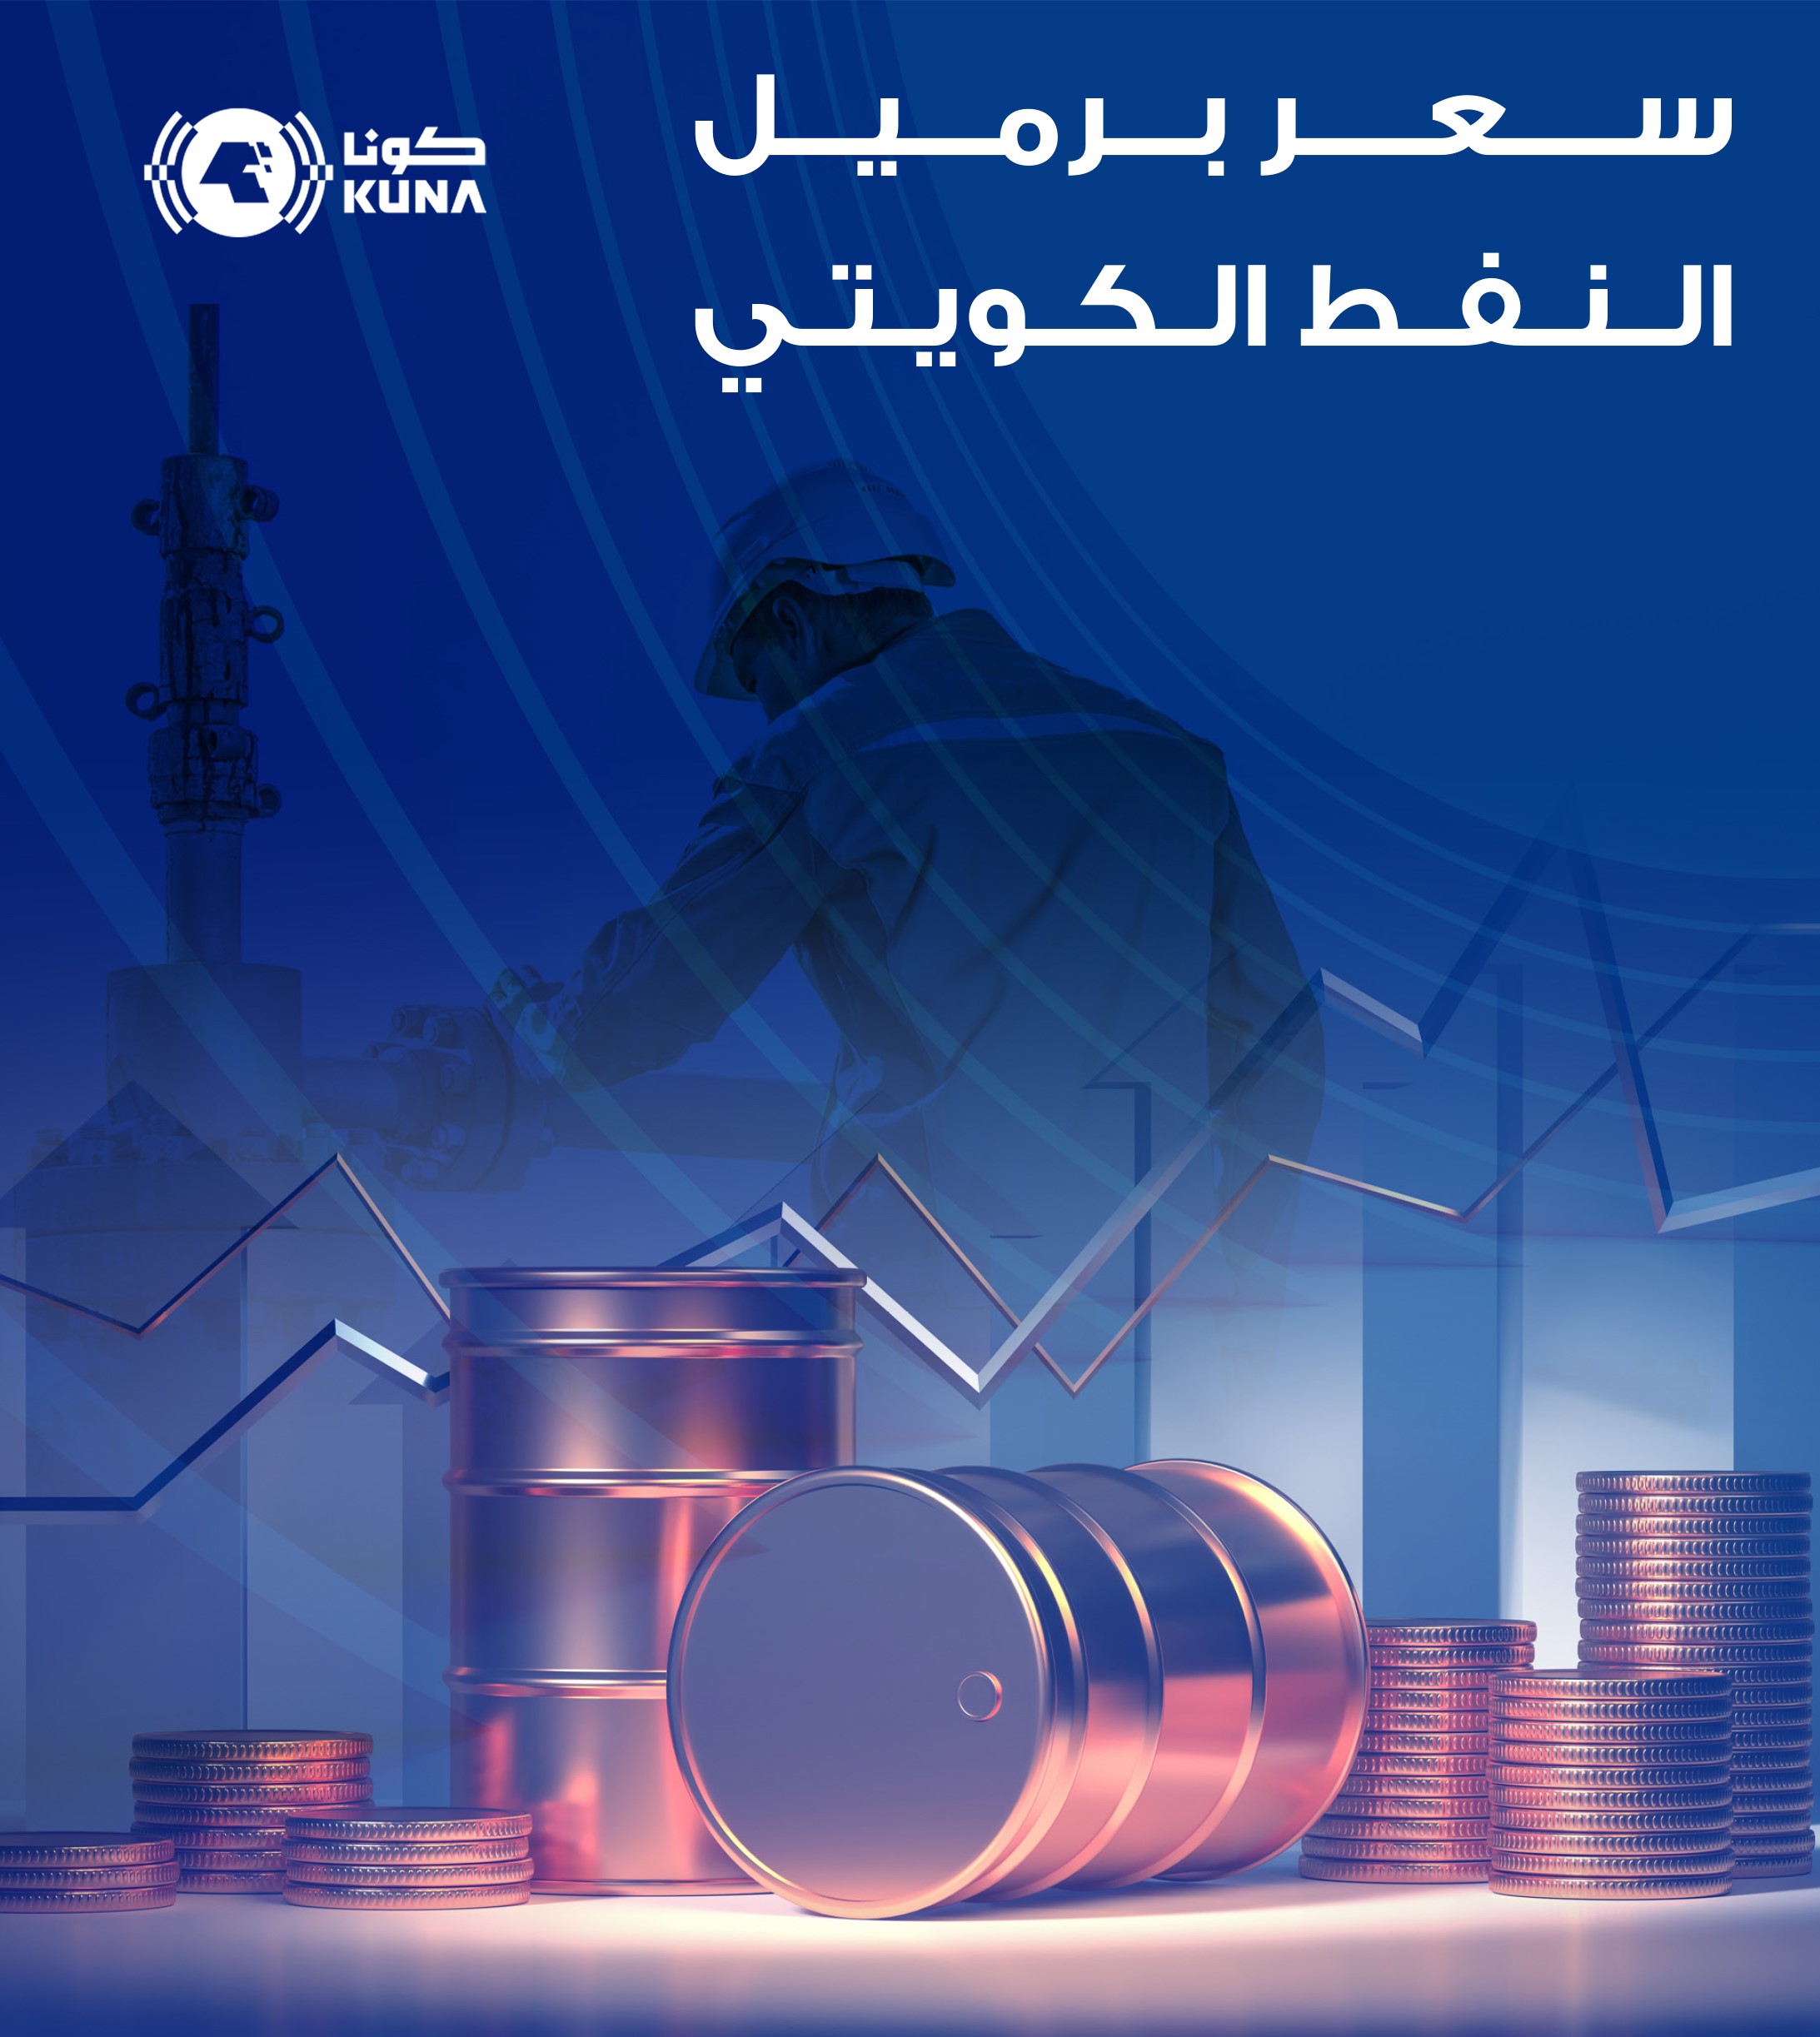 سعر برميل النفط الكويتي يرتفع 1.68 دولار ليبلغ 85.82 دولار